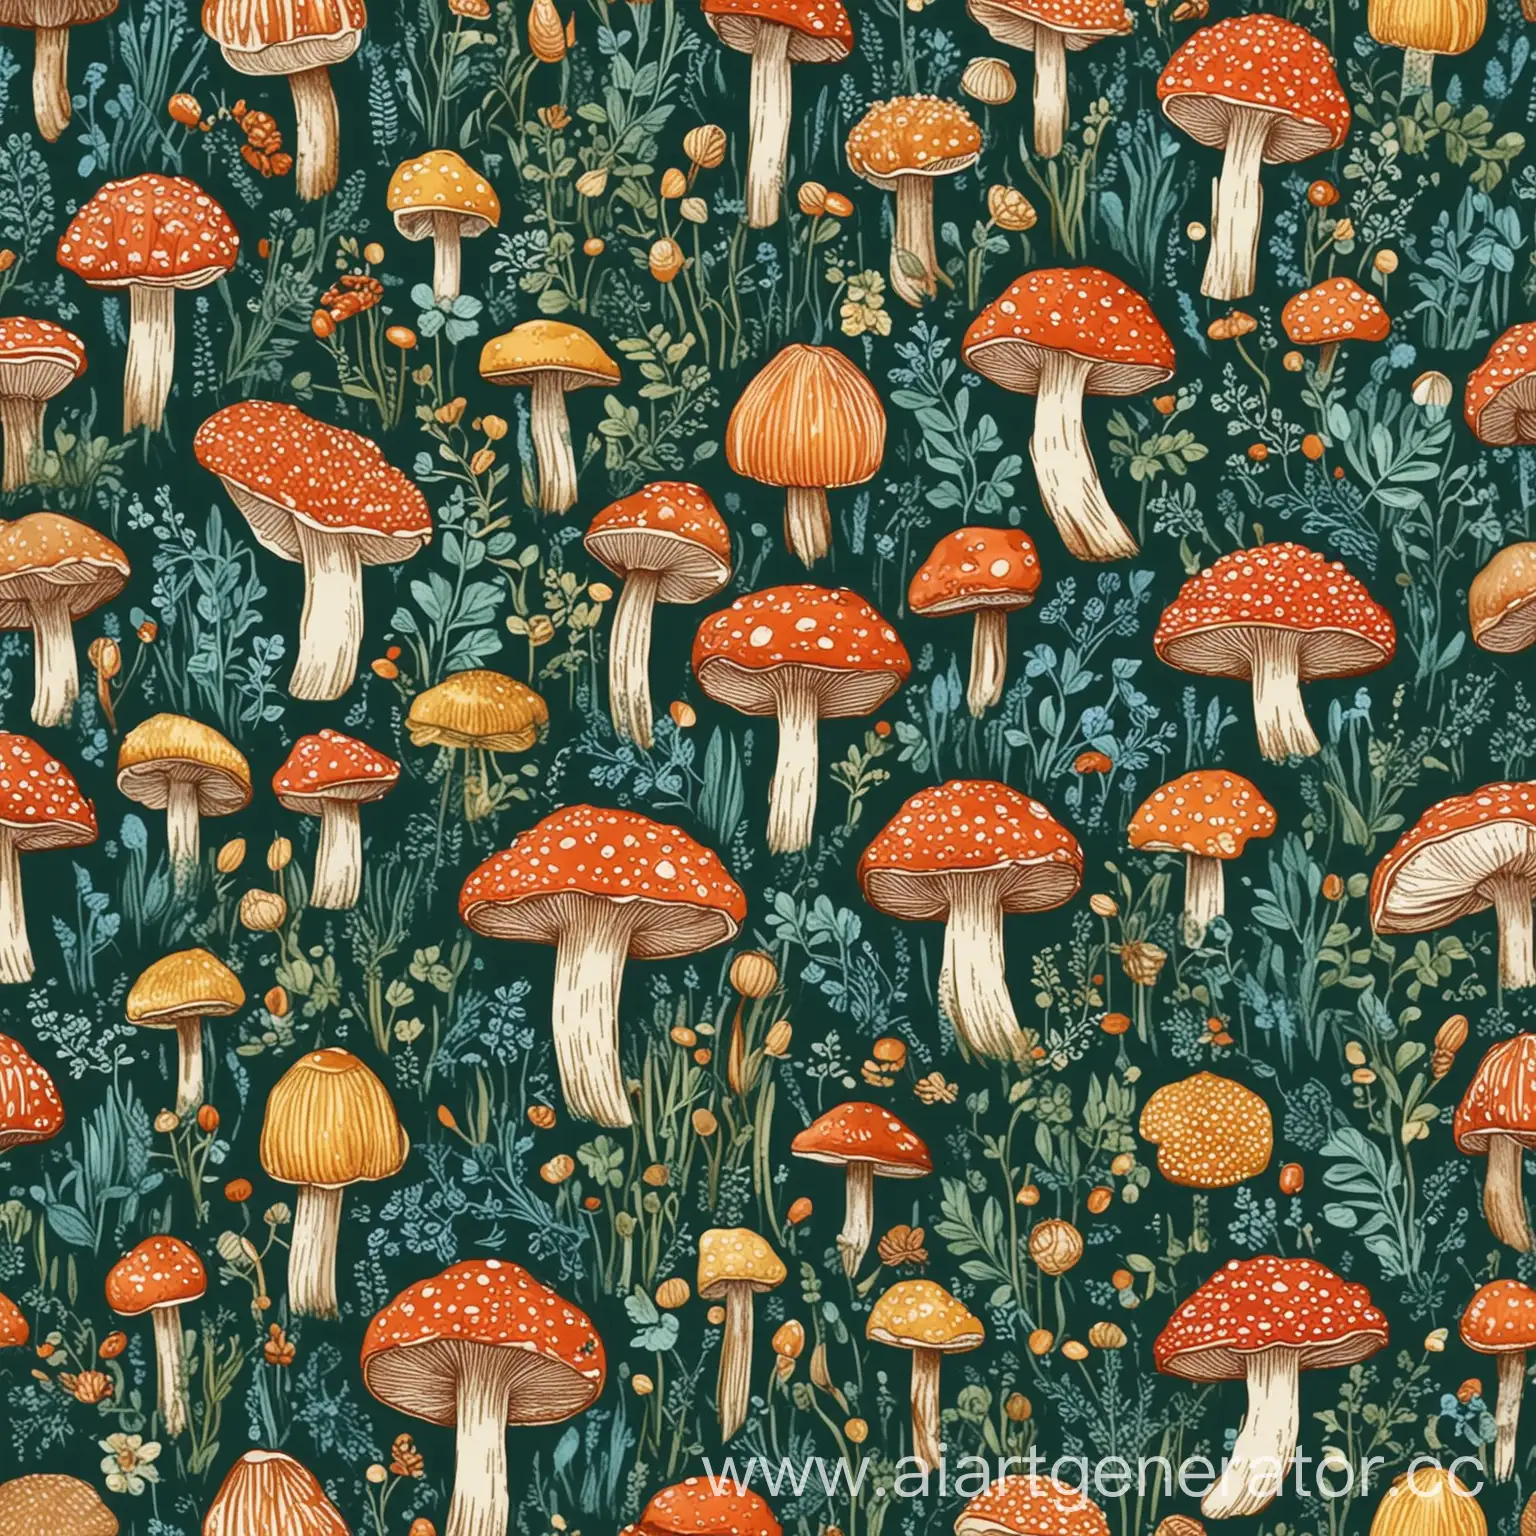 Изображение в виде паттерна с грибами (эноки, вешенки, эринги, кордицепс, шиитаке, ежовик); цвета глубокий зеленый, коричневый, светло-голубой, оранжево-красный, салатовый, бежевый